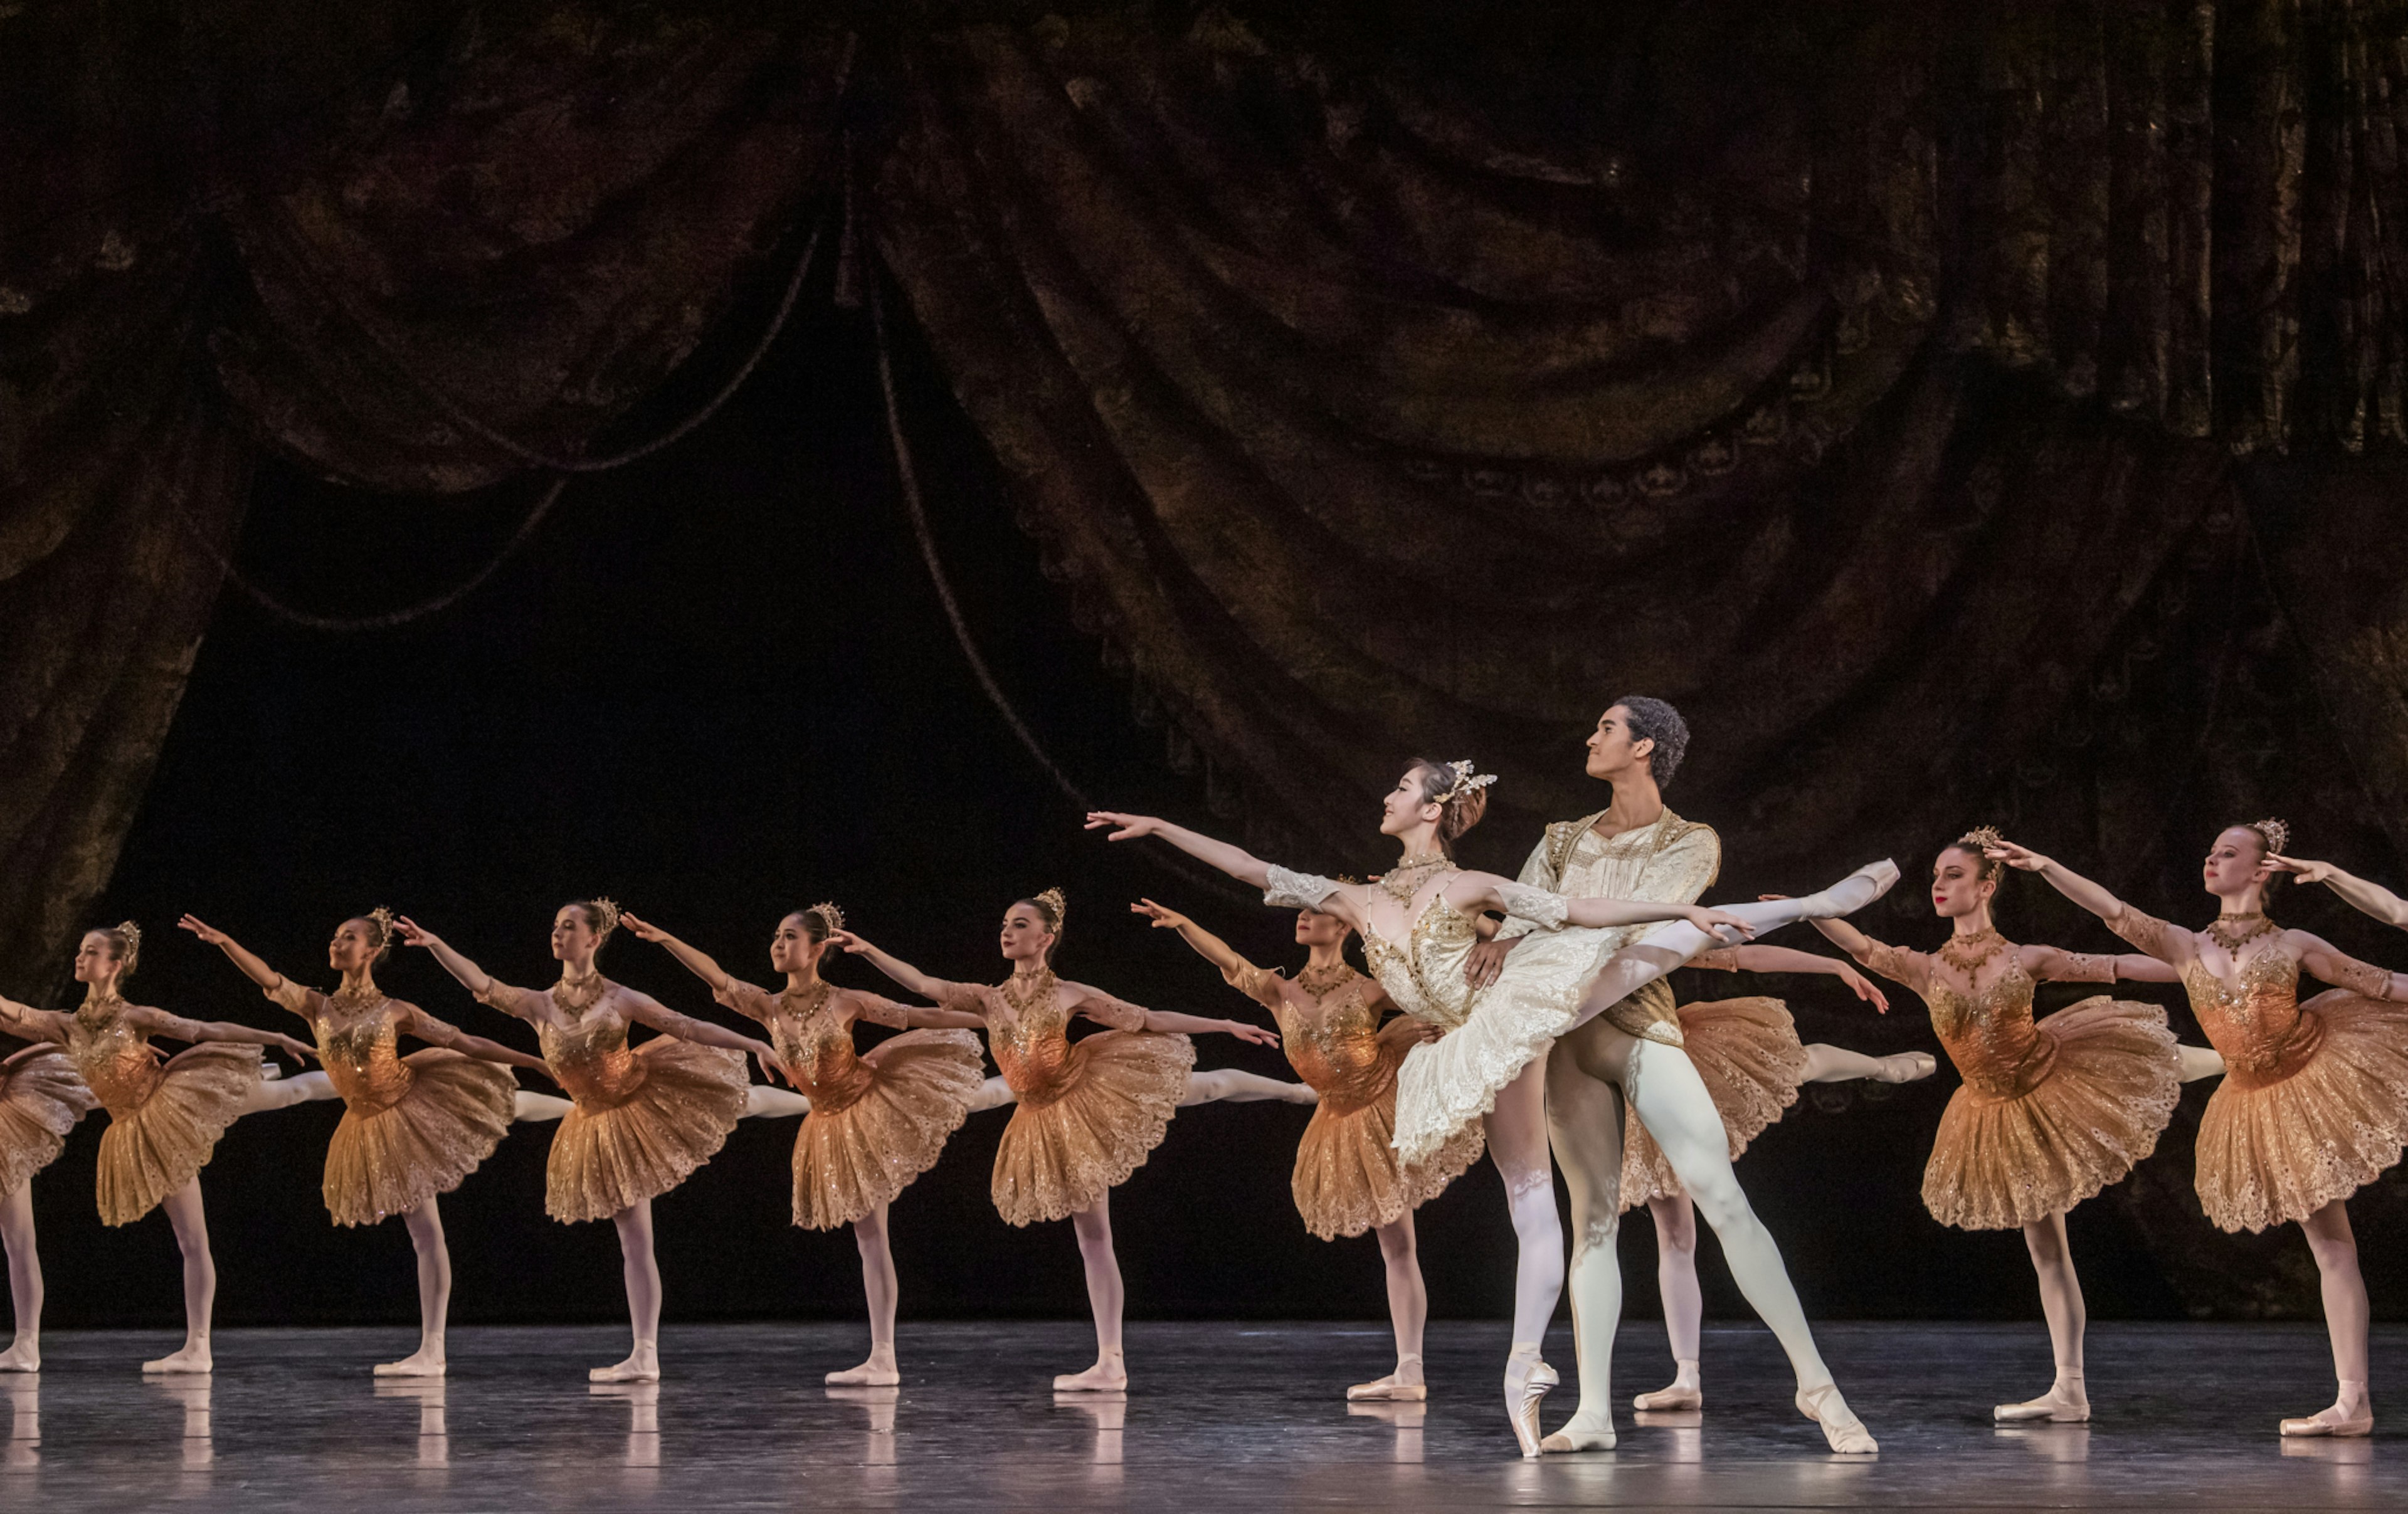 ©2019 The Royal Ballet School. Photograph by Tristram Kenton.